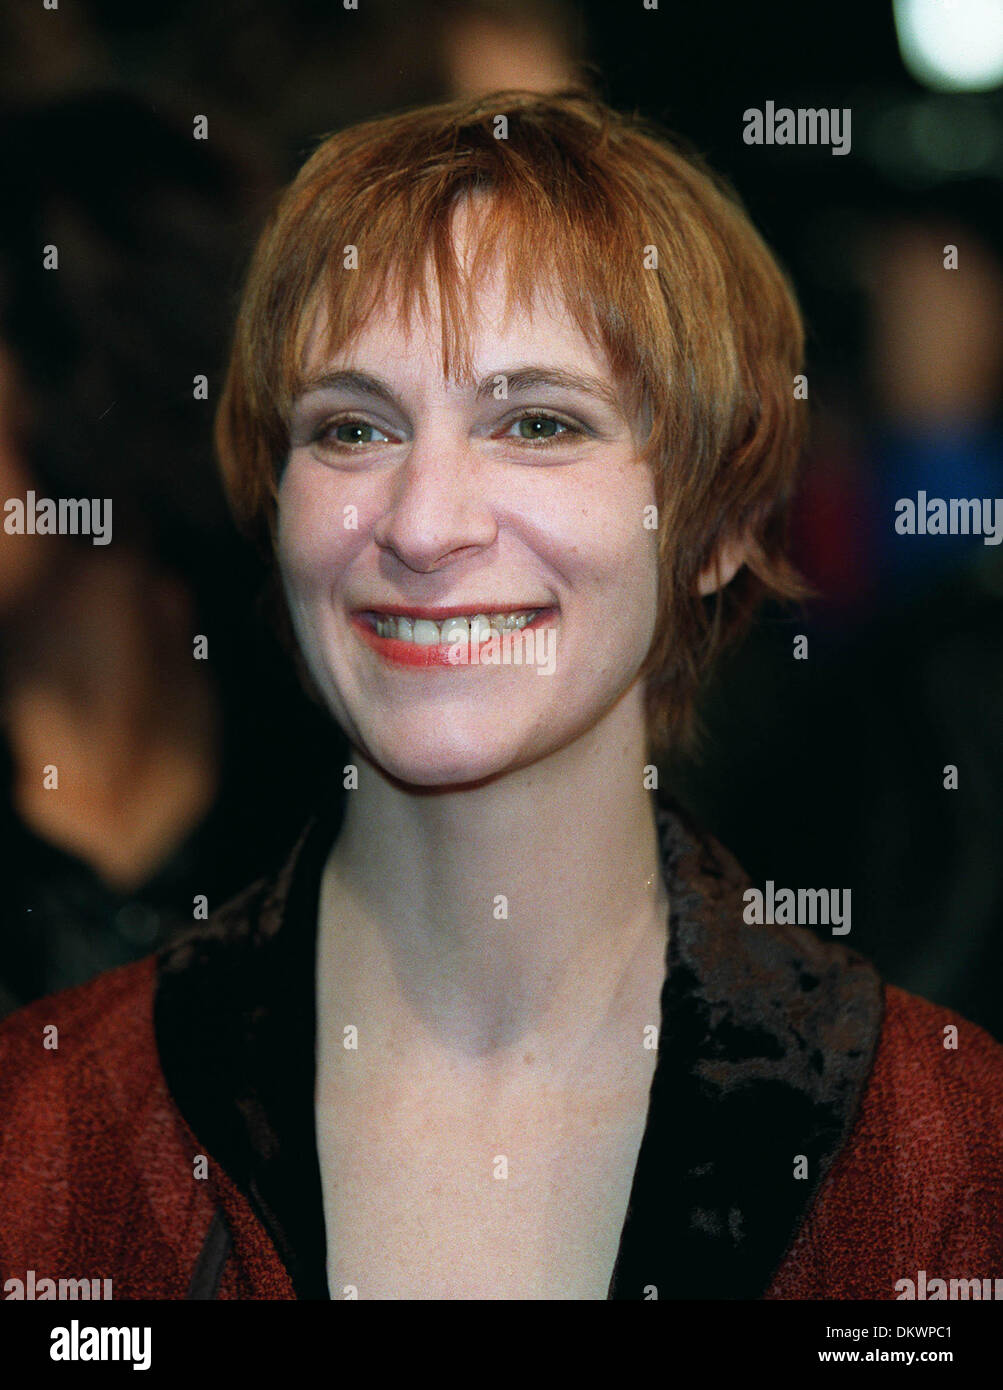 AMANDA PLUMMER.ACTRESS.06/01/1998.M8E32C. Stock Photo